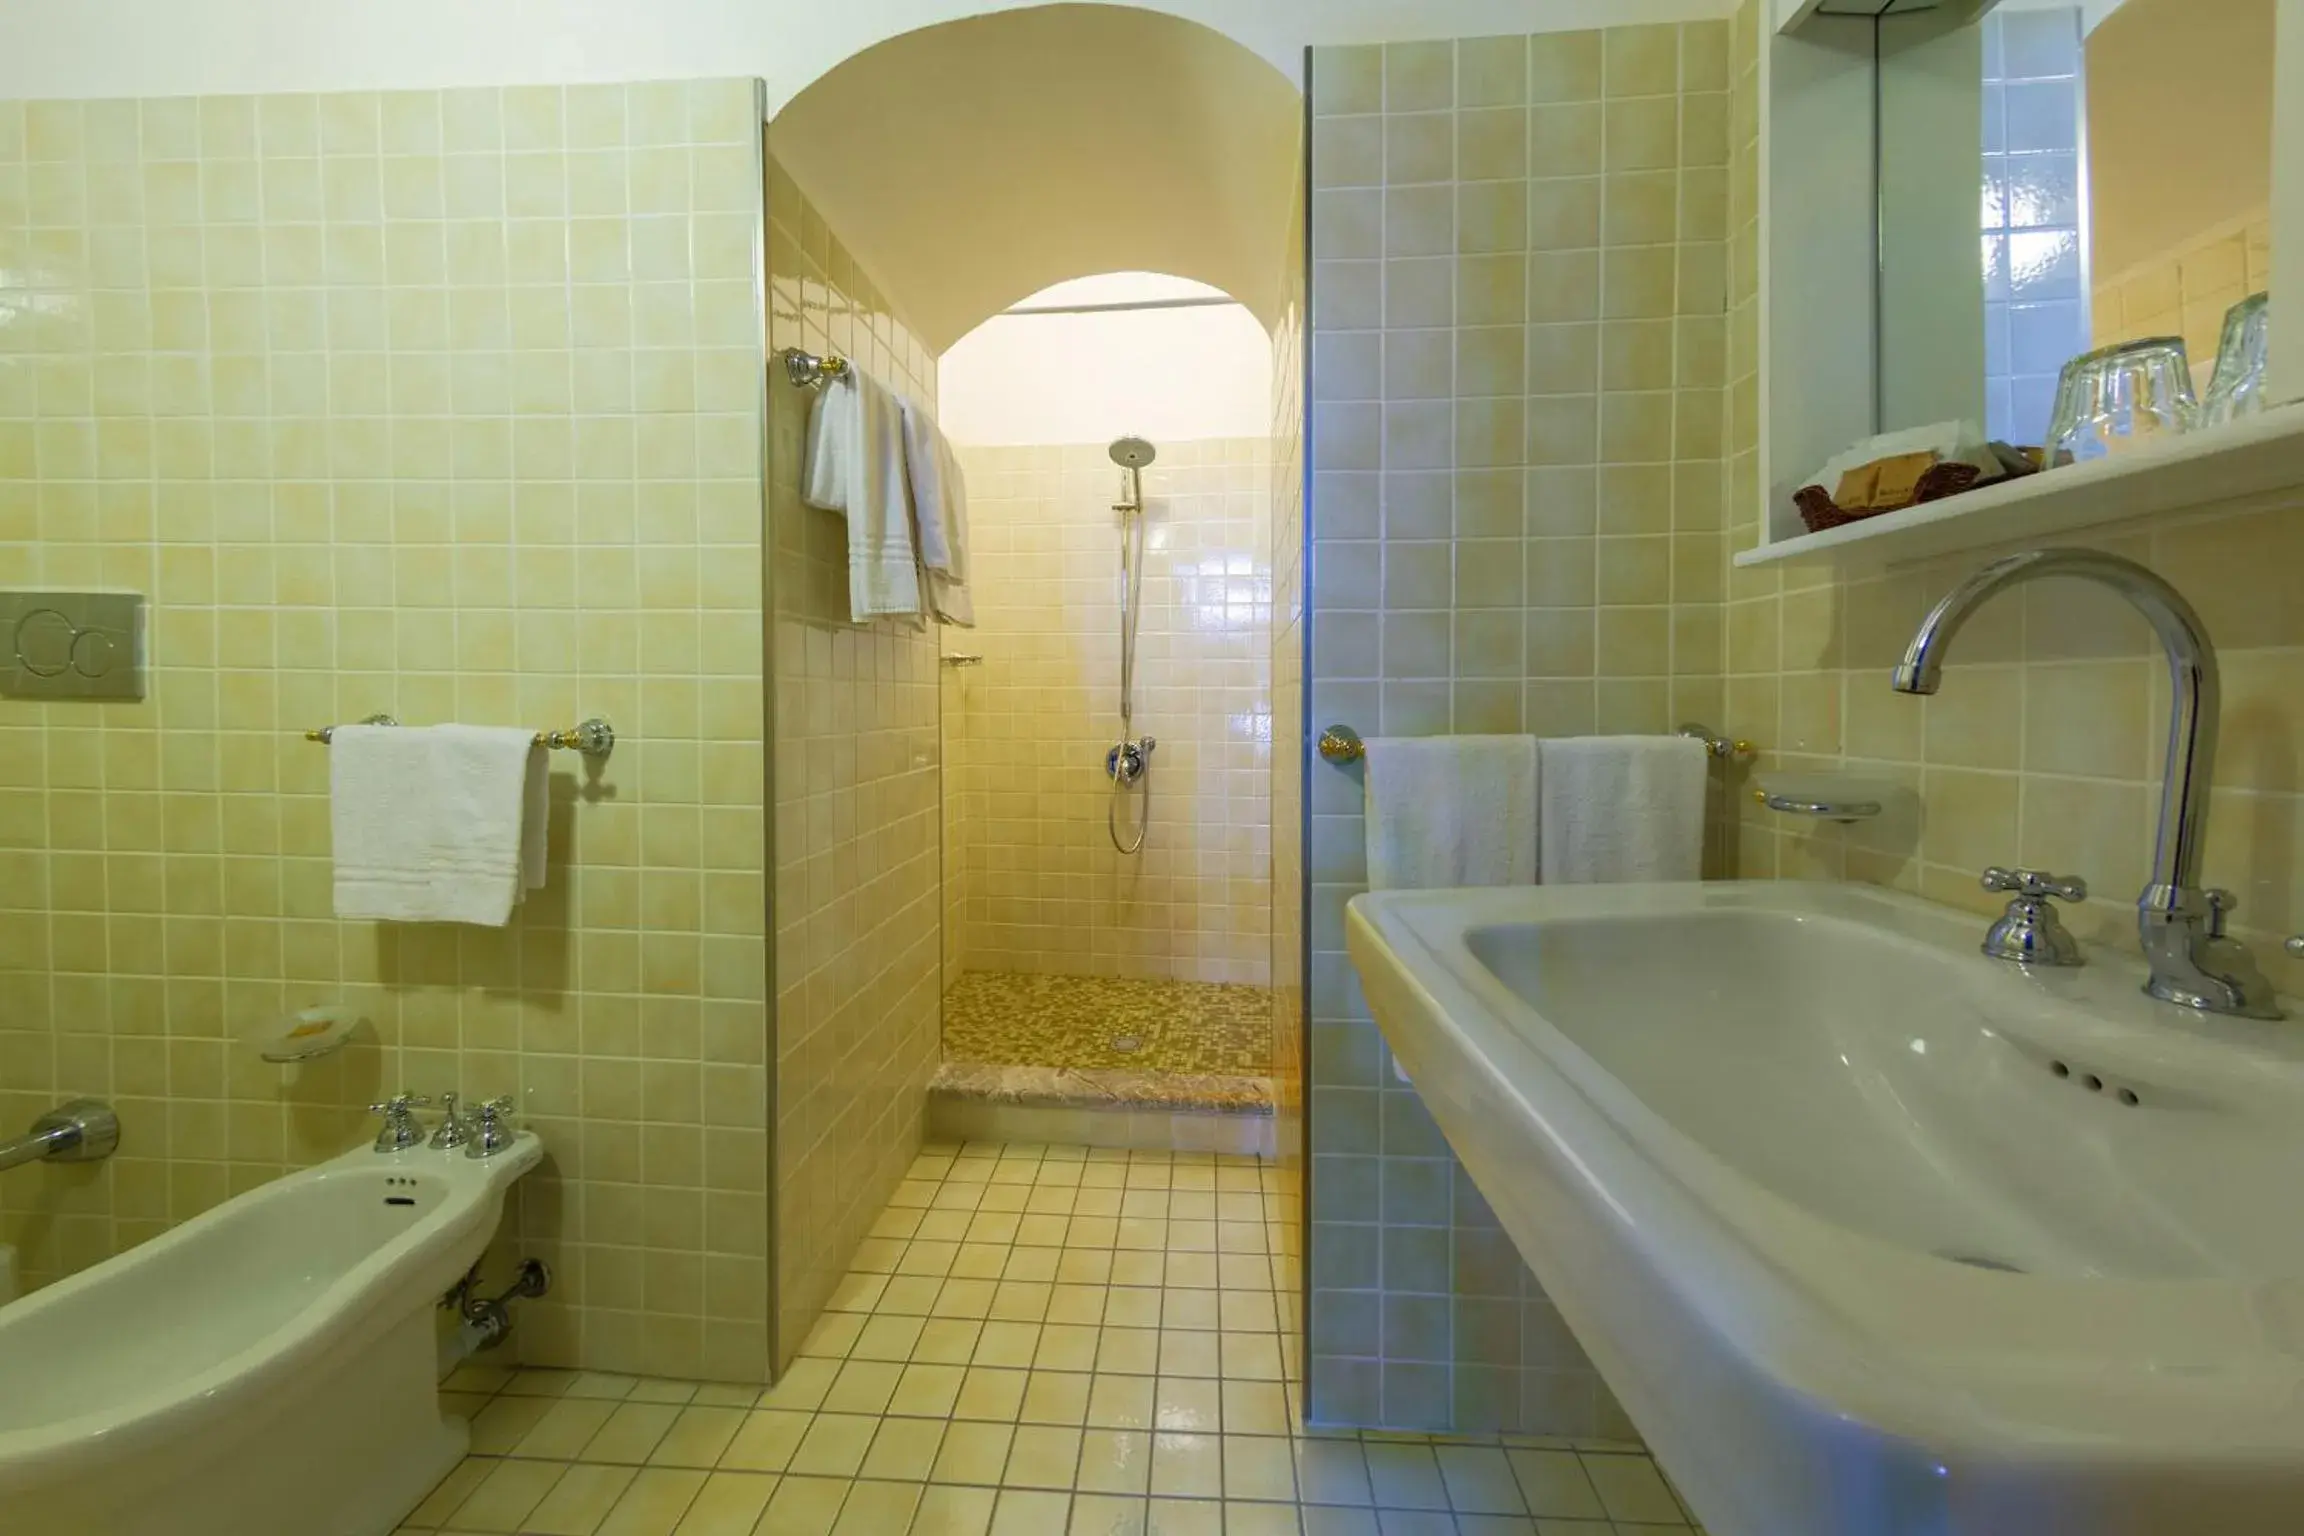 Bathroom in Hotel Bel Soggiorno